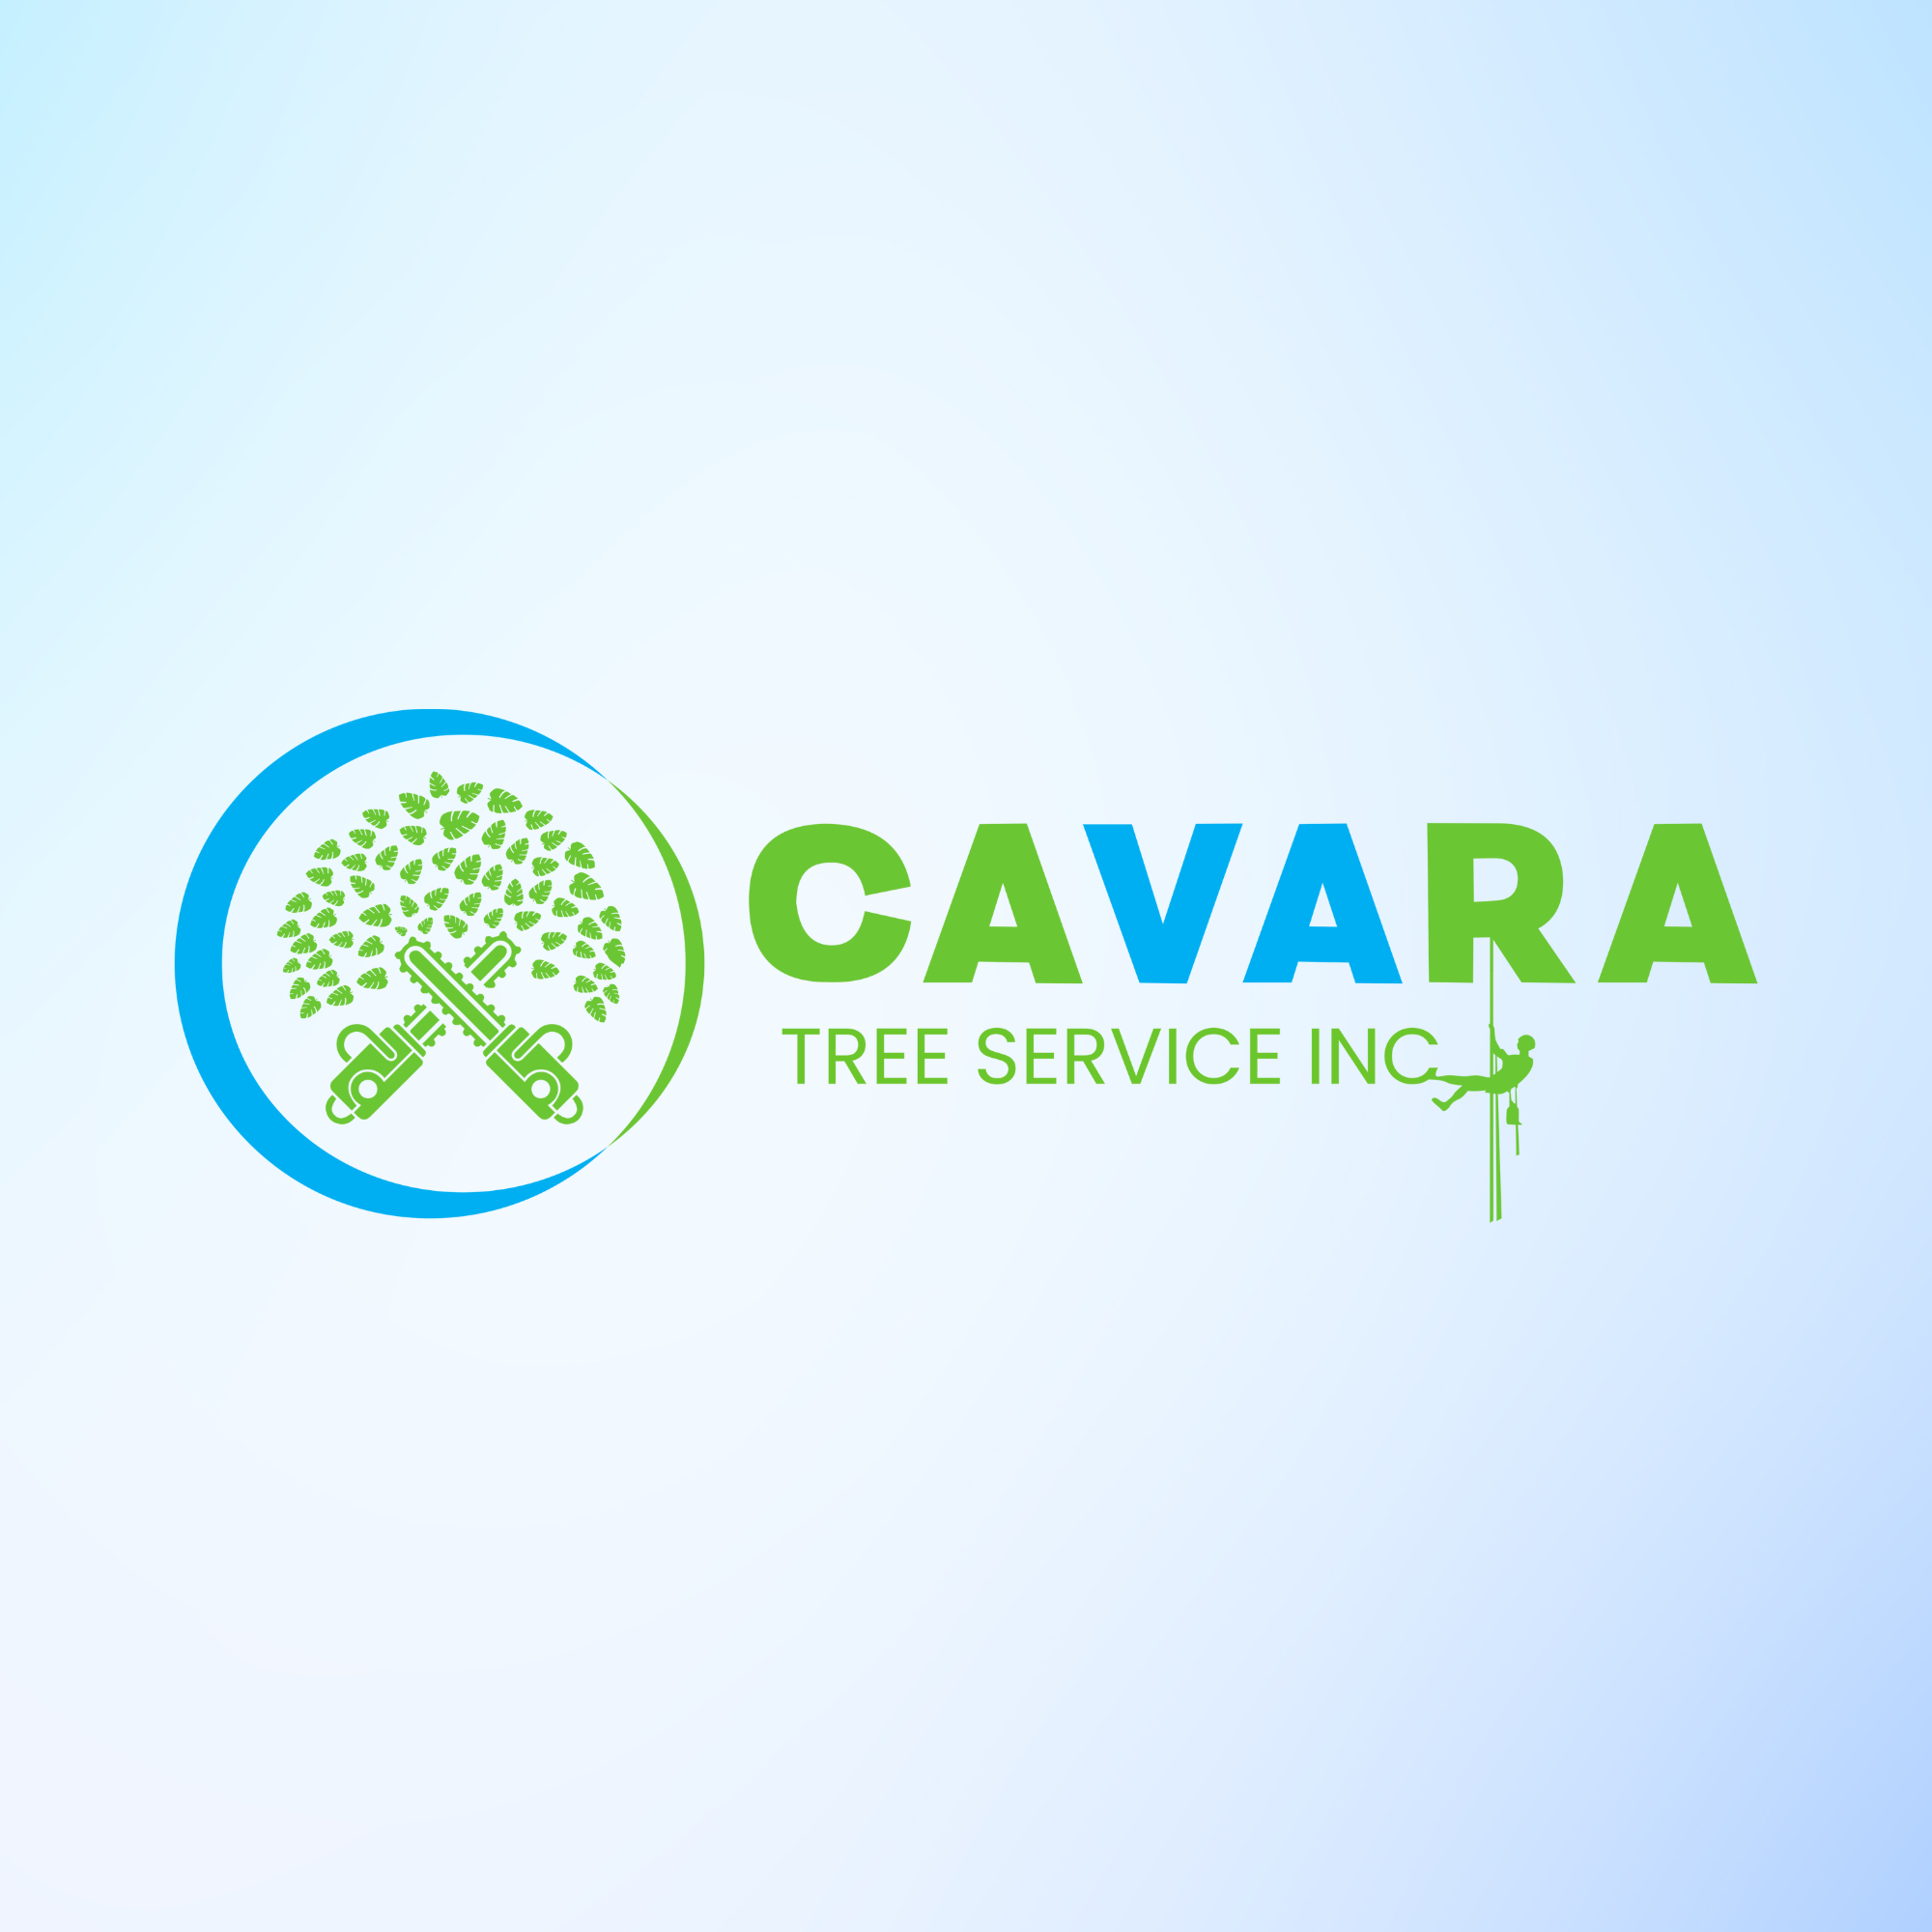 Cavara Tree Service Inc's Logo